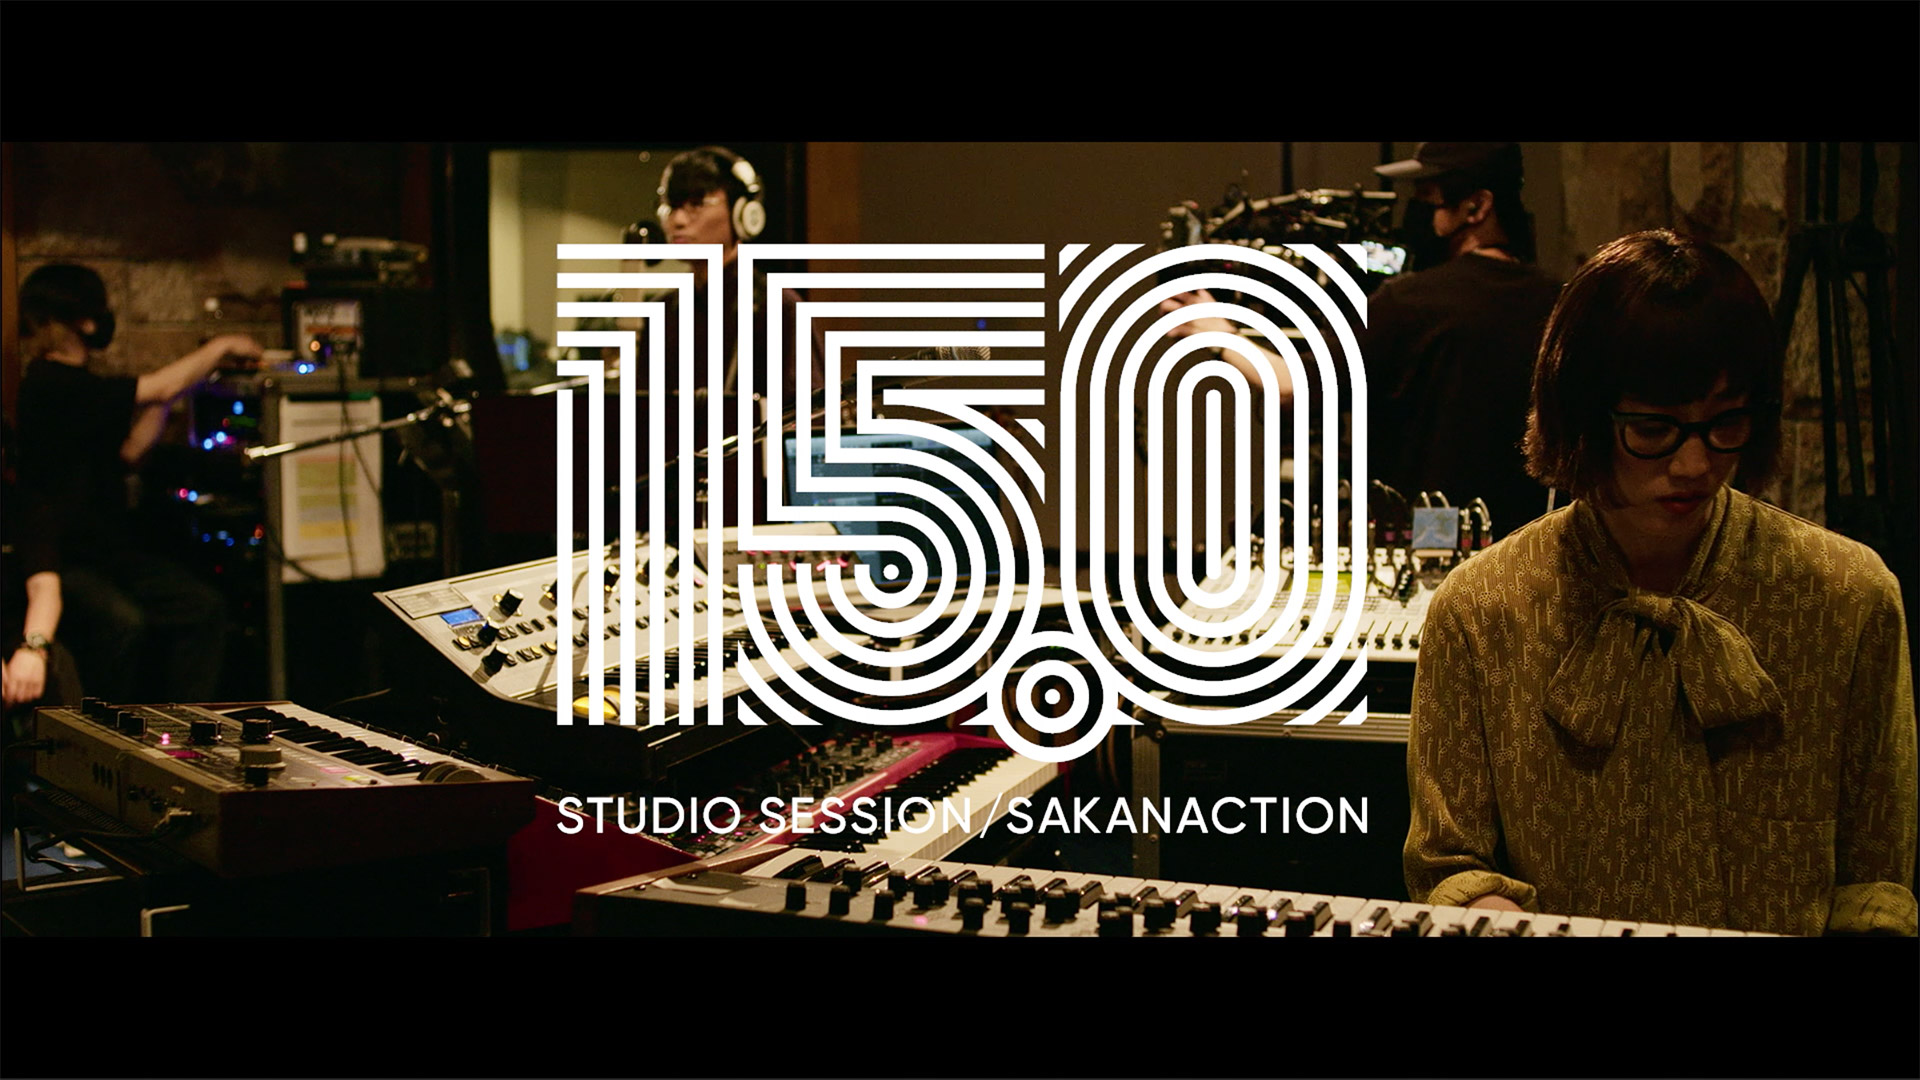 サカナクション 15.0 STUDIO SESSION Blu-ray 限定盤 ミュージック オンラインストアサイト